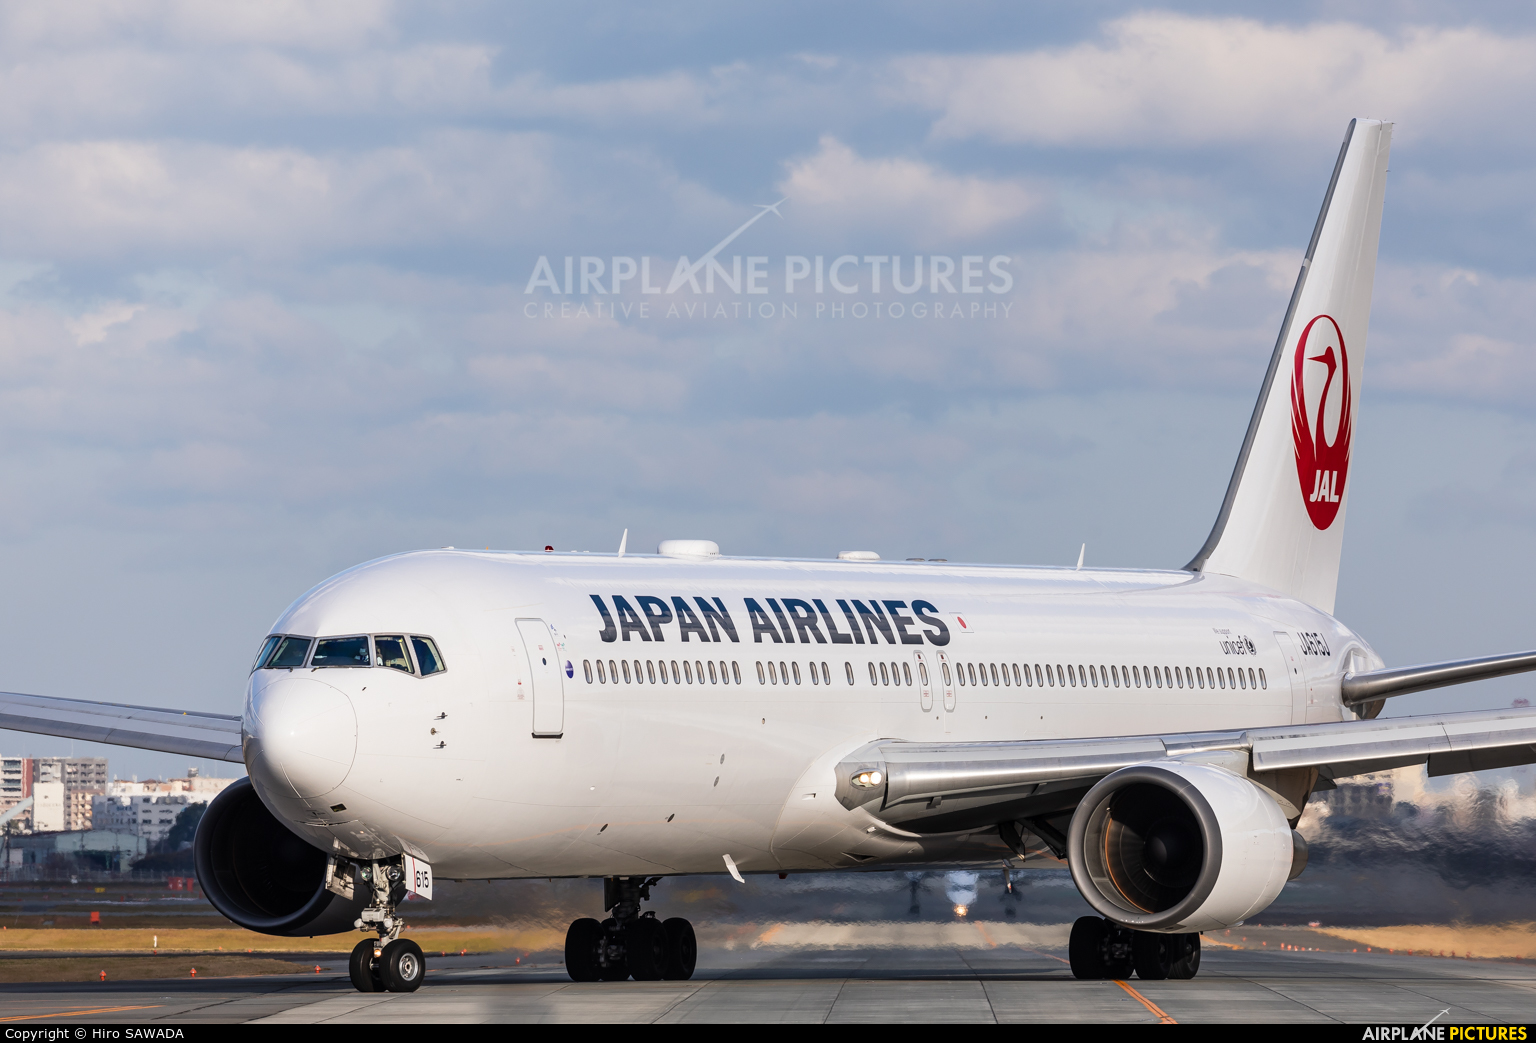 JAL - Japan Airlines JA615J aircraft at Fukuoka